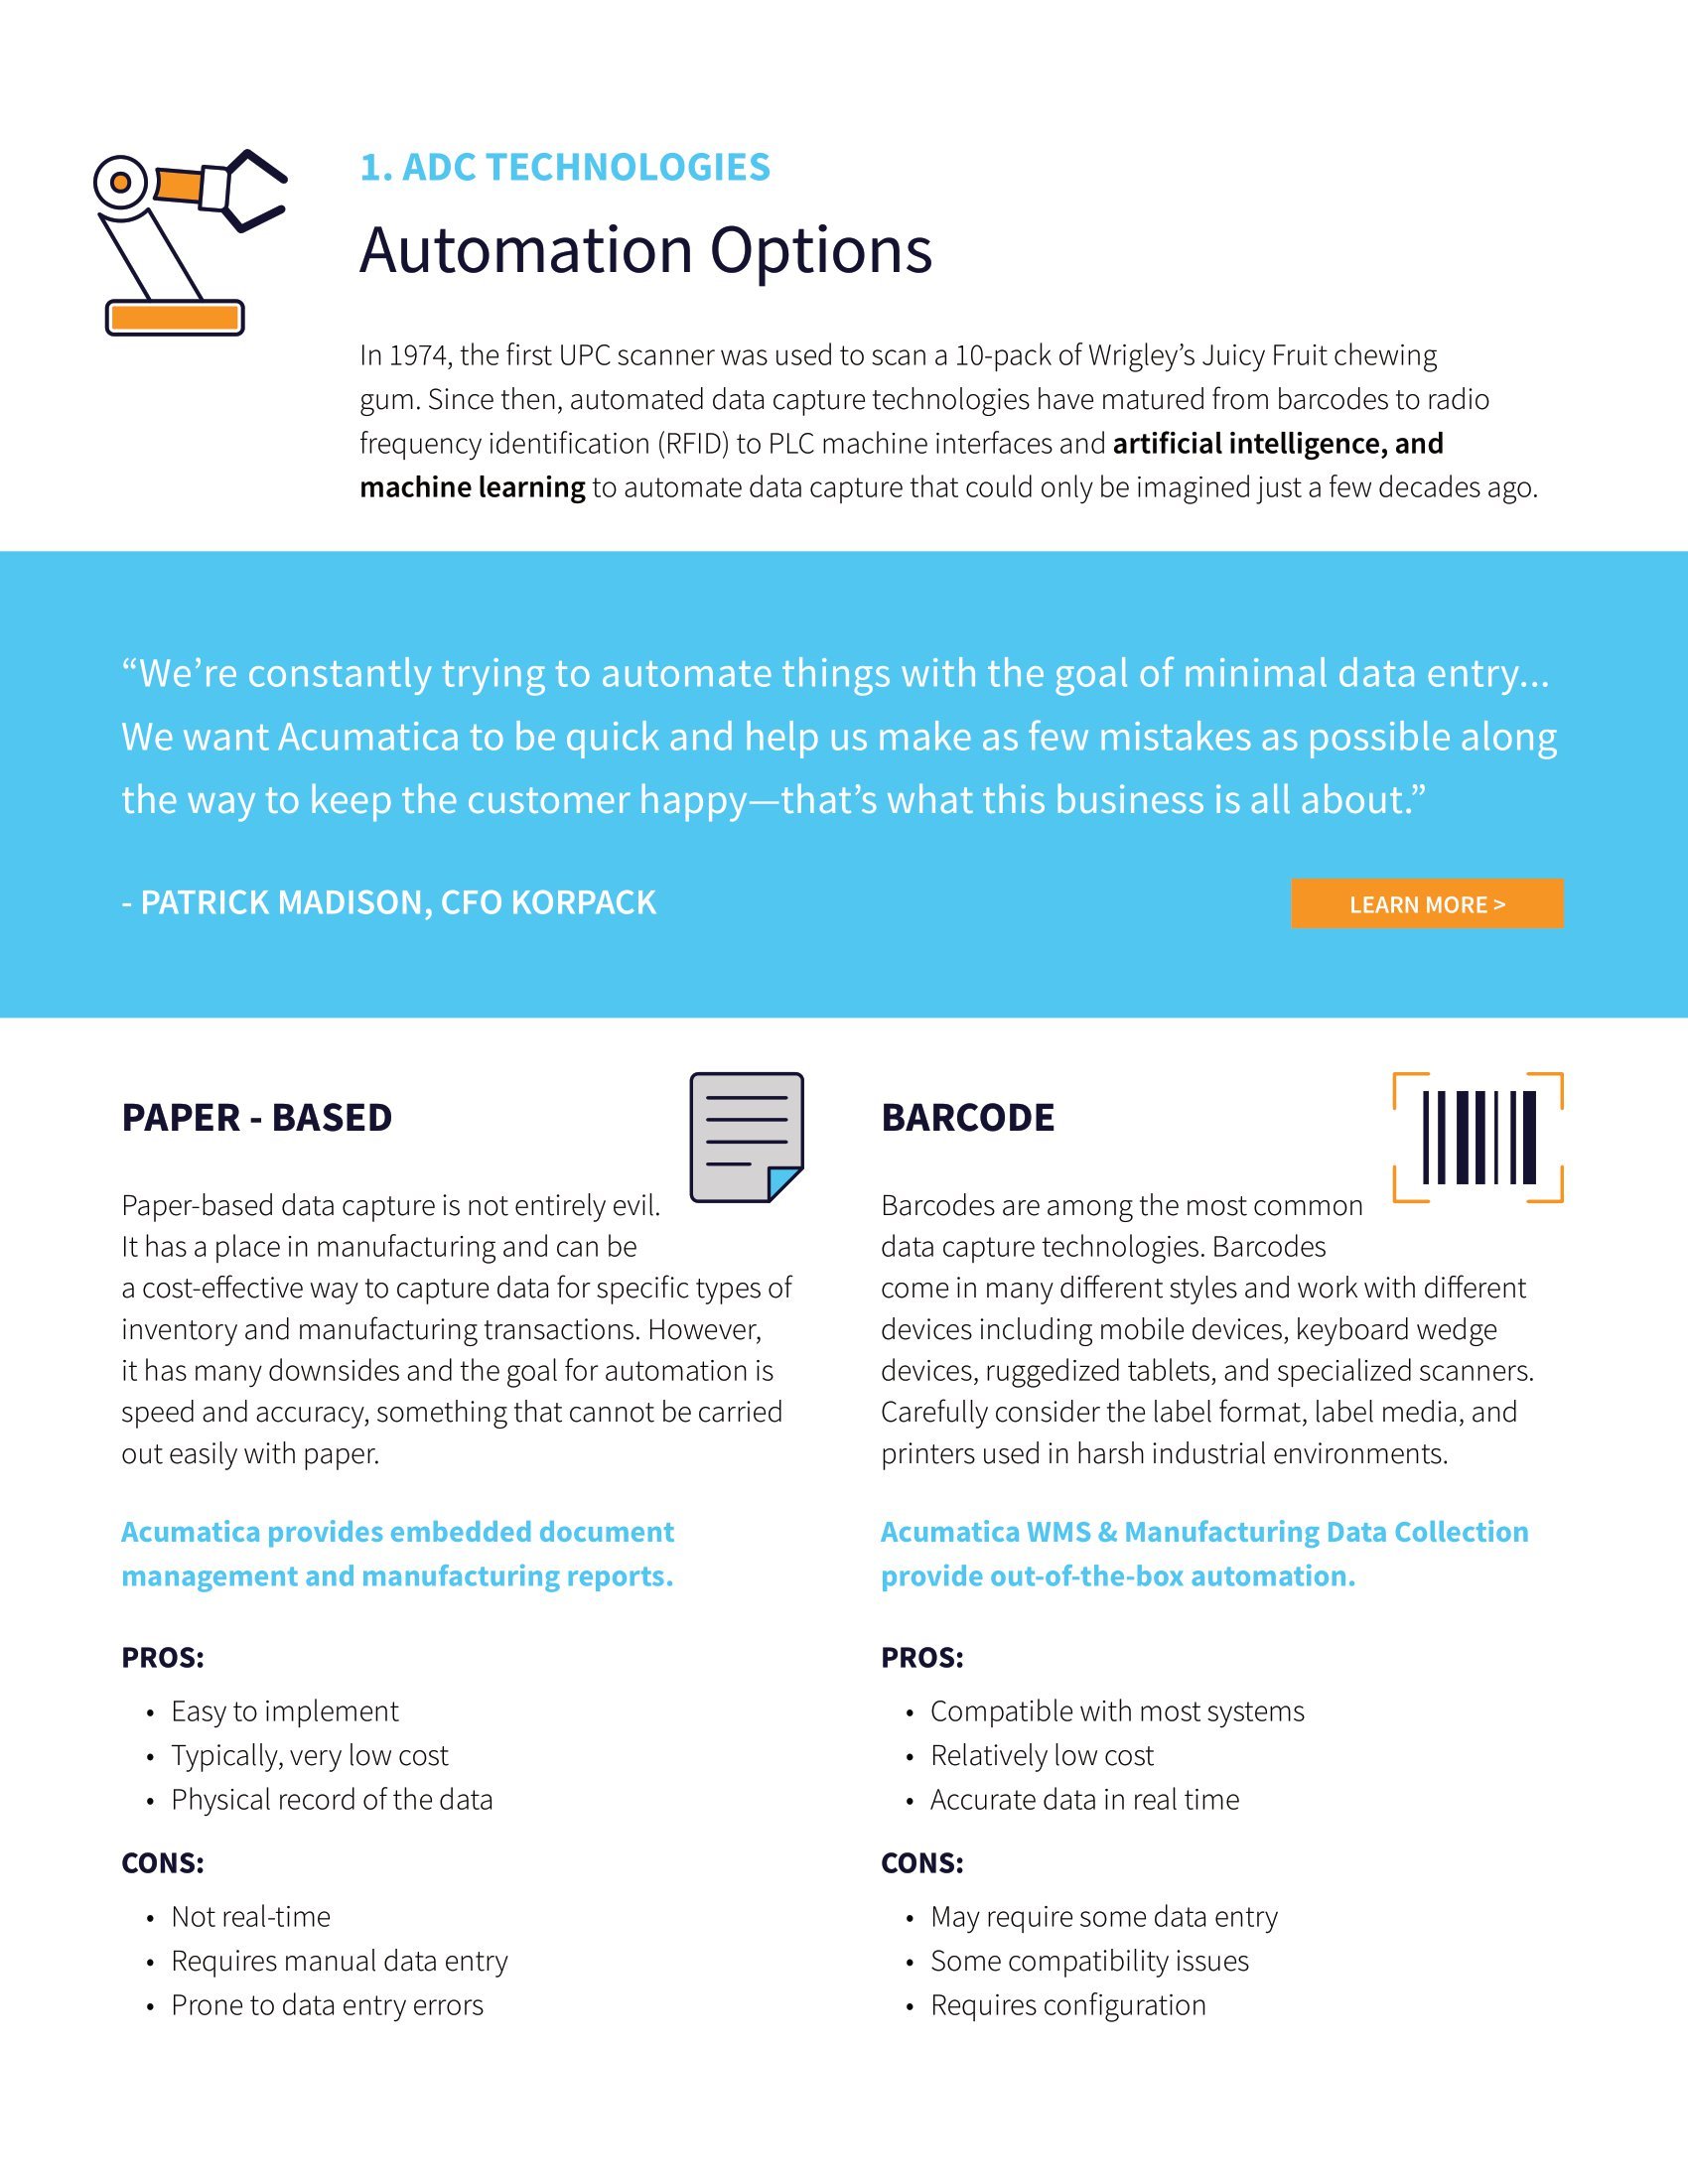 Saisie automatisée des données pour les fabricants, page 2